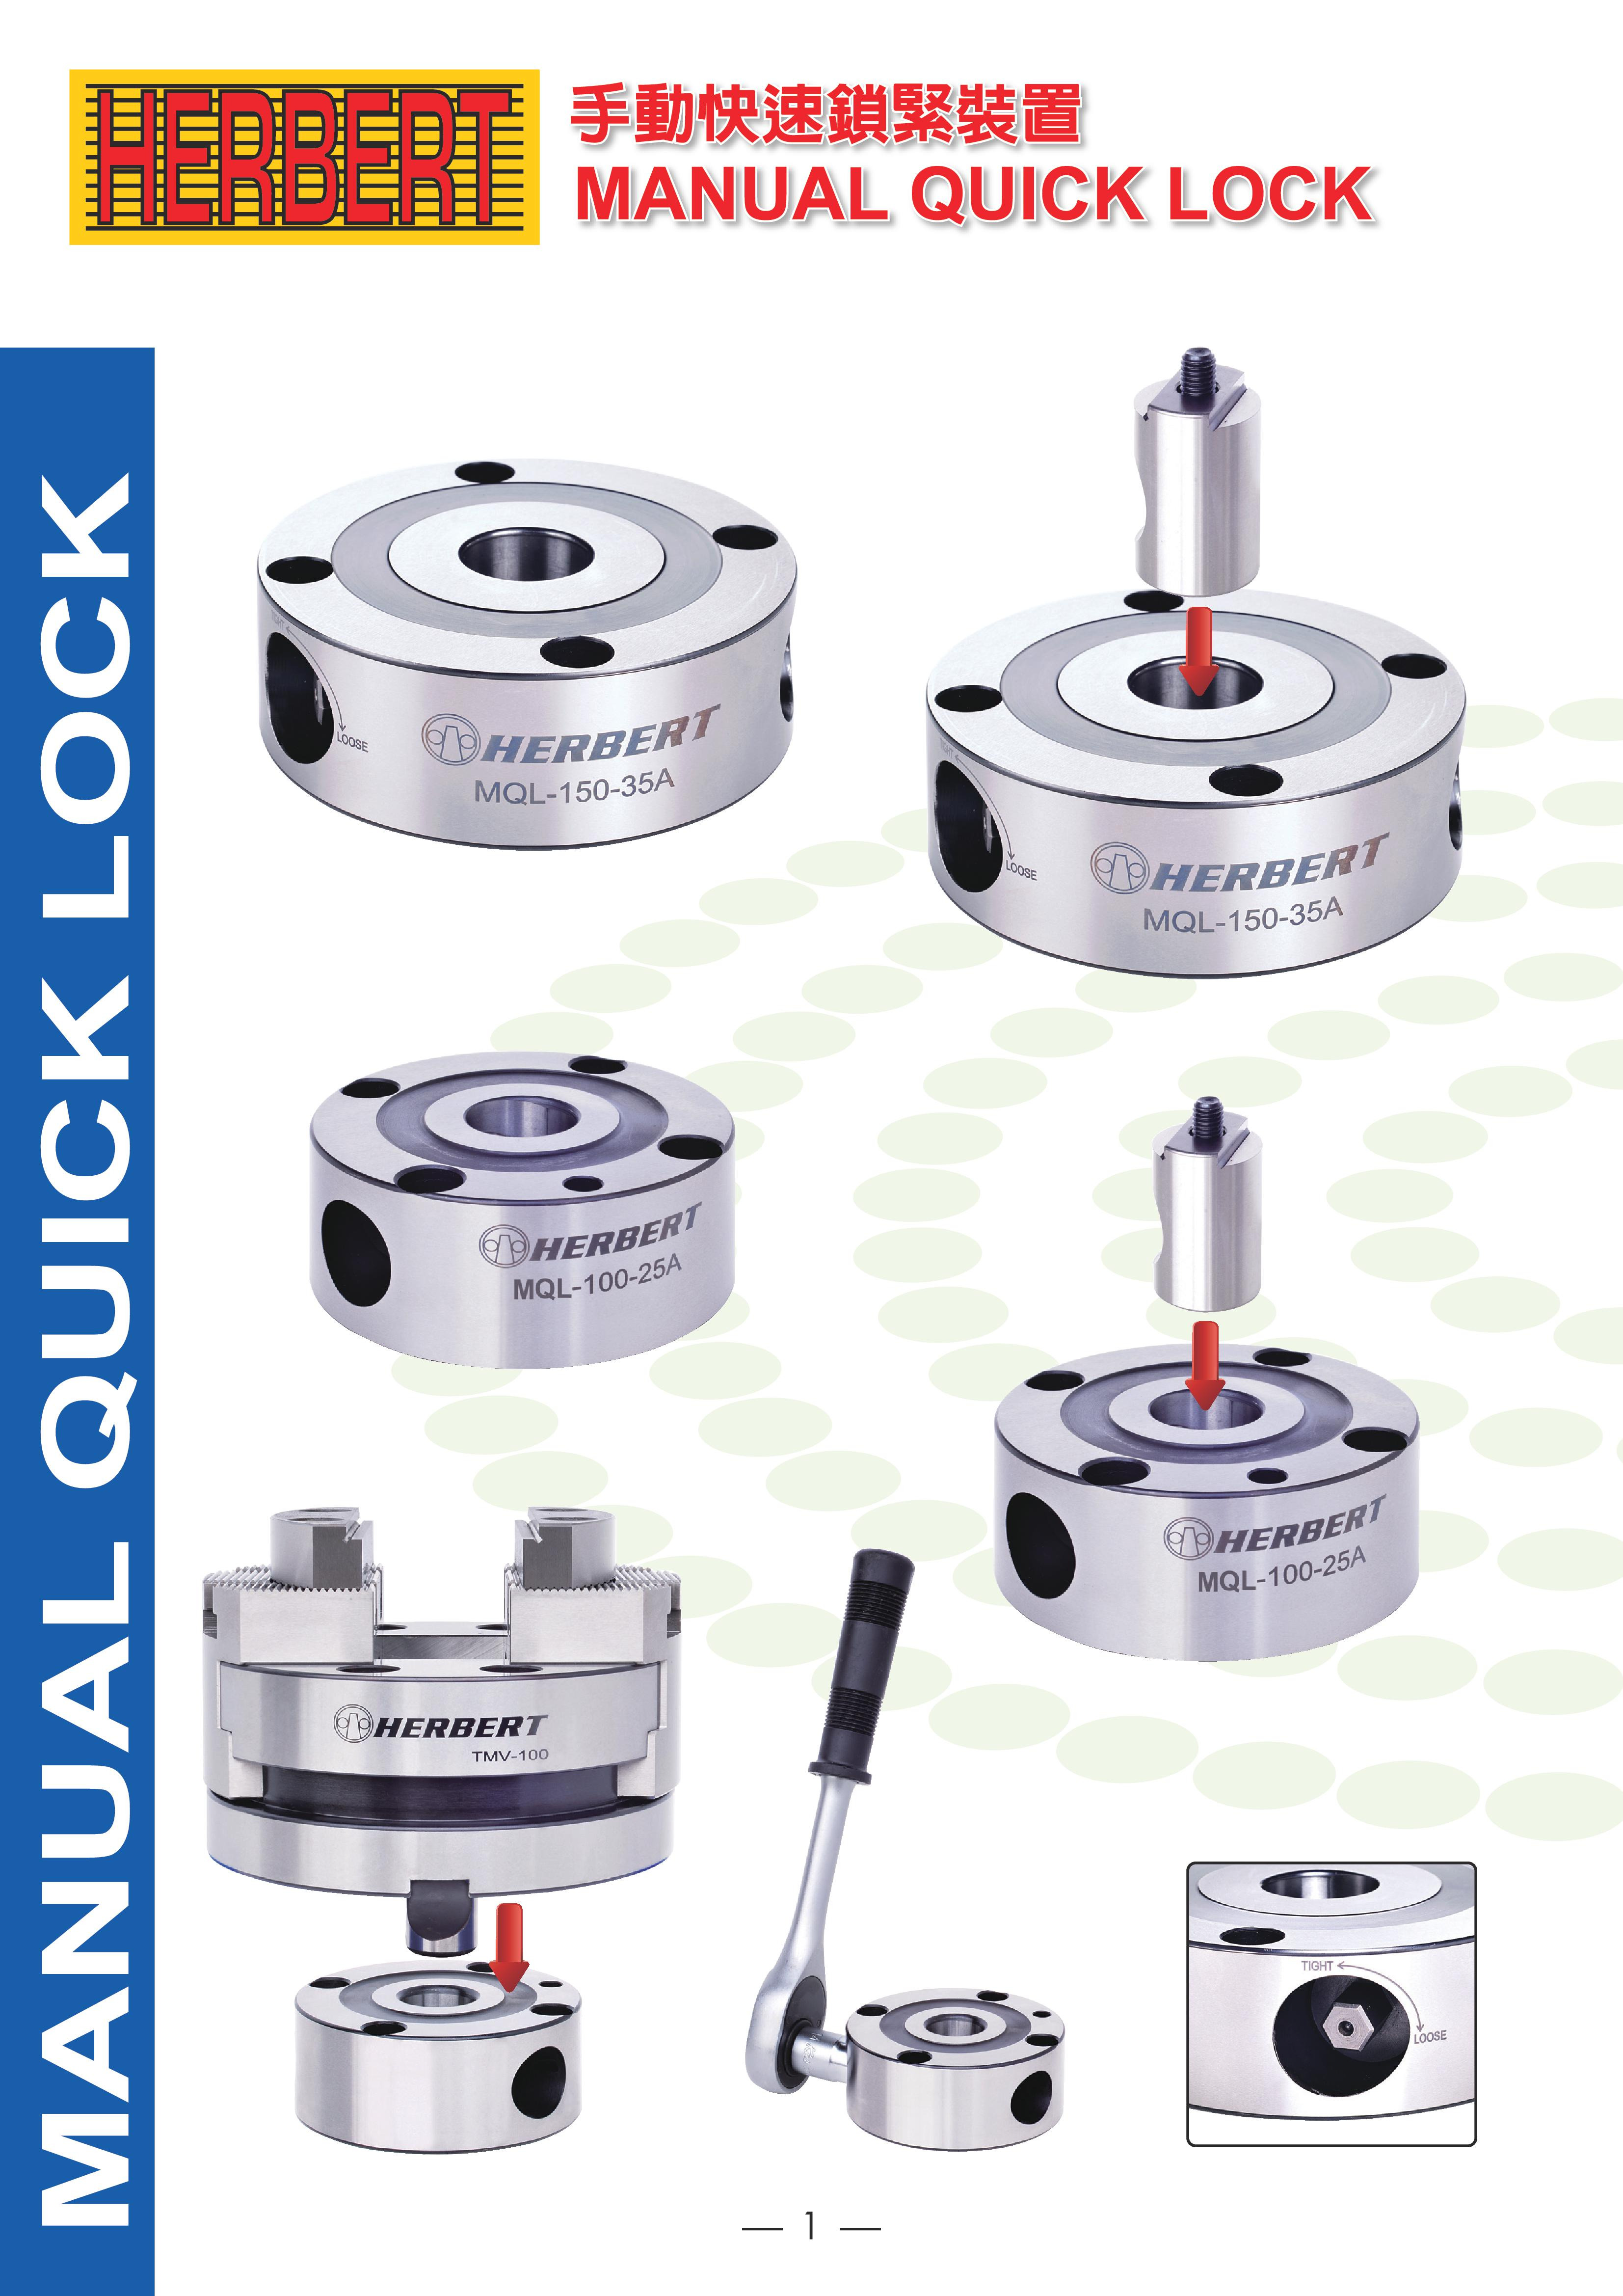 Manual Quick Lock